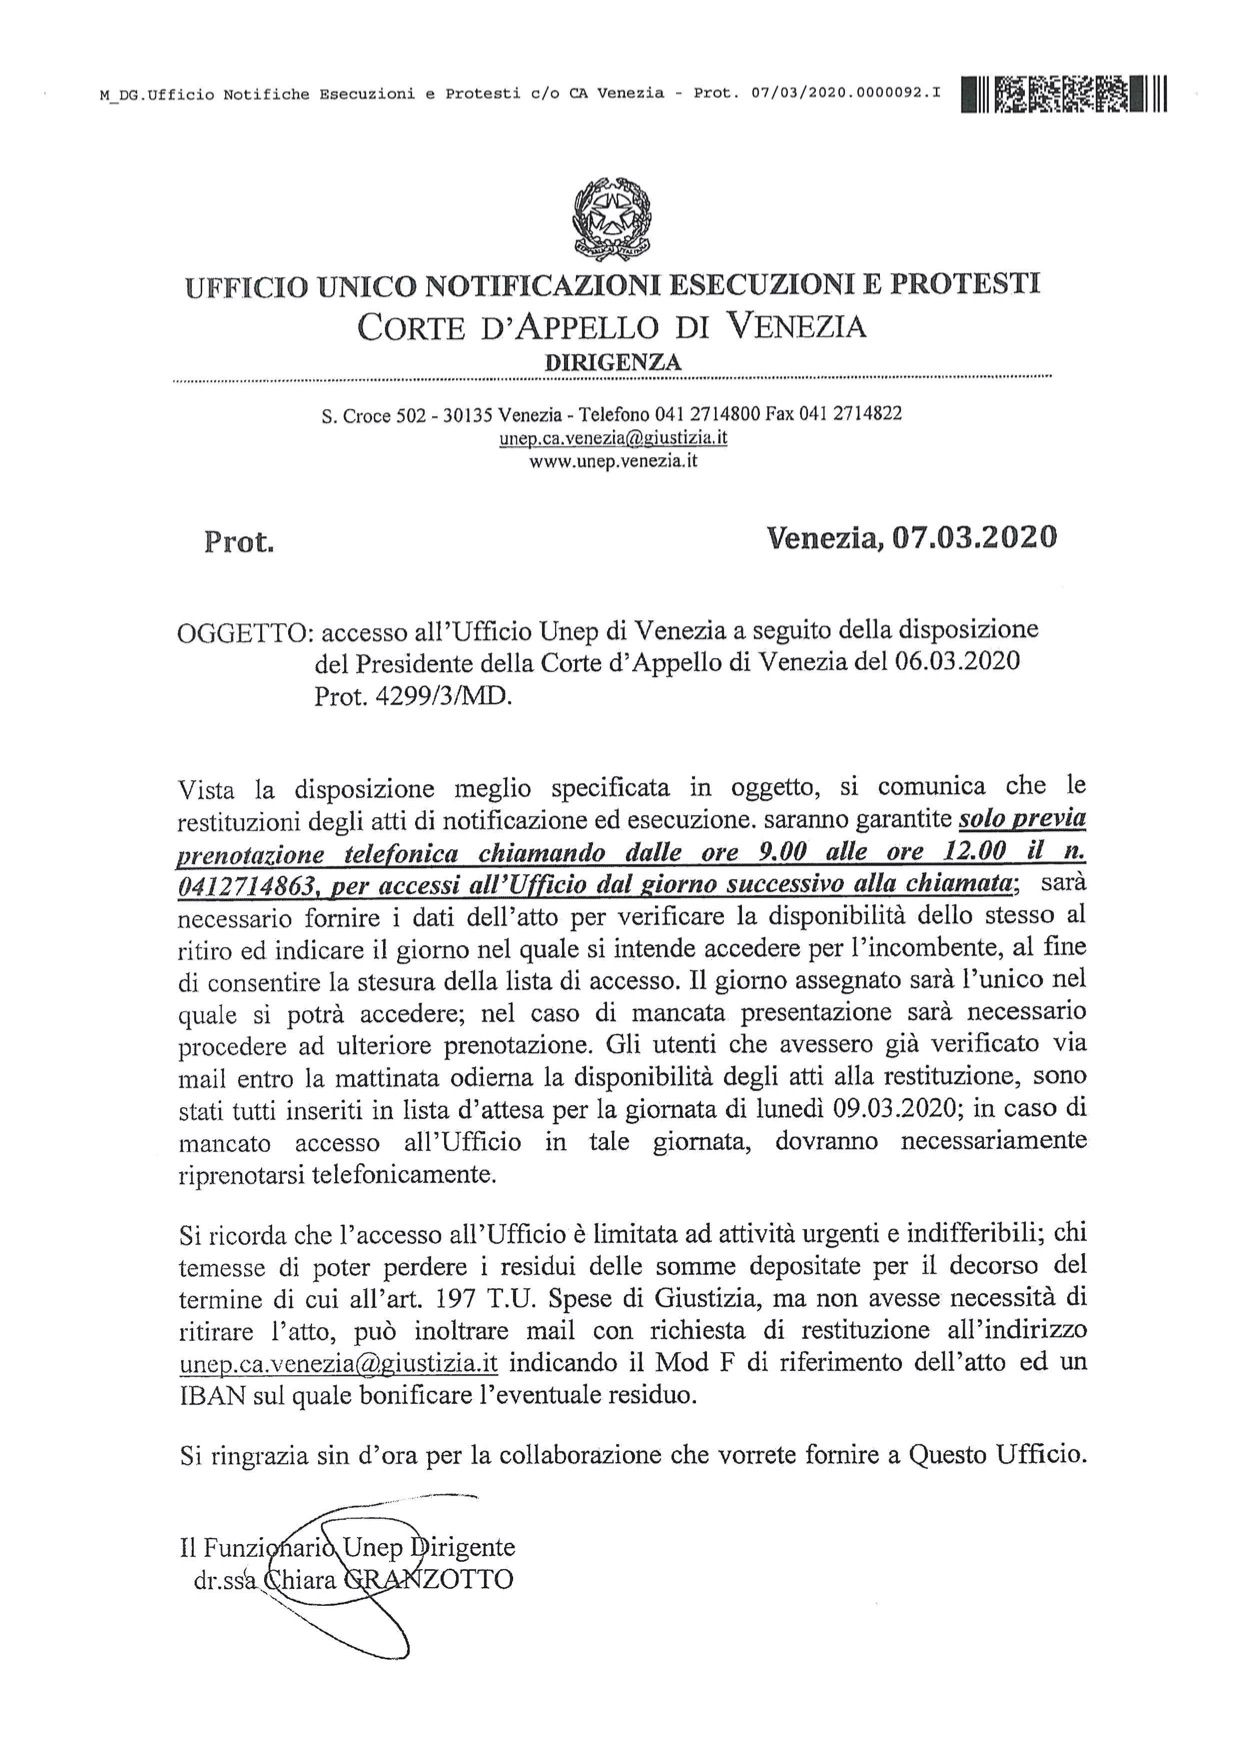 Provvedimento Dirigente UNEP di venezia del 7.03.2020 con riferimento alle modalità di accesso agli uffici